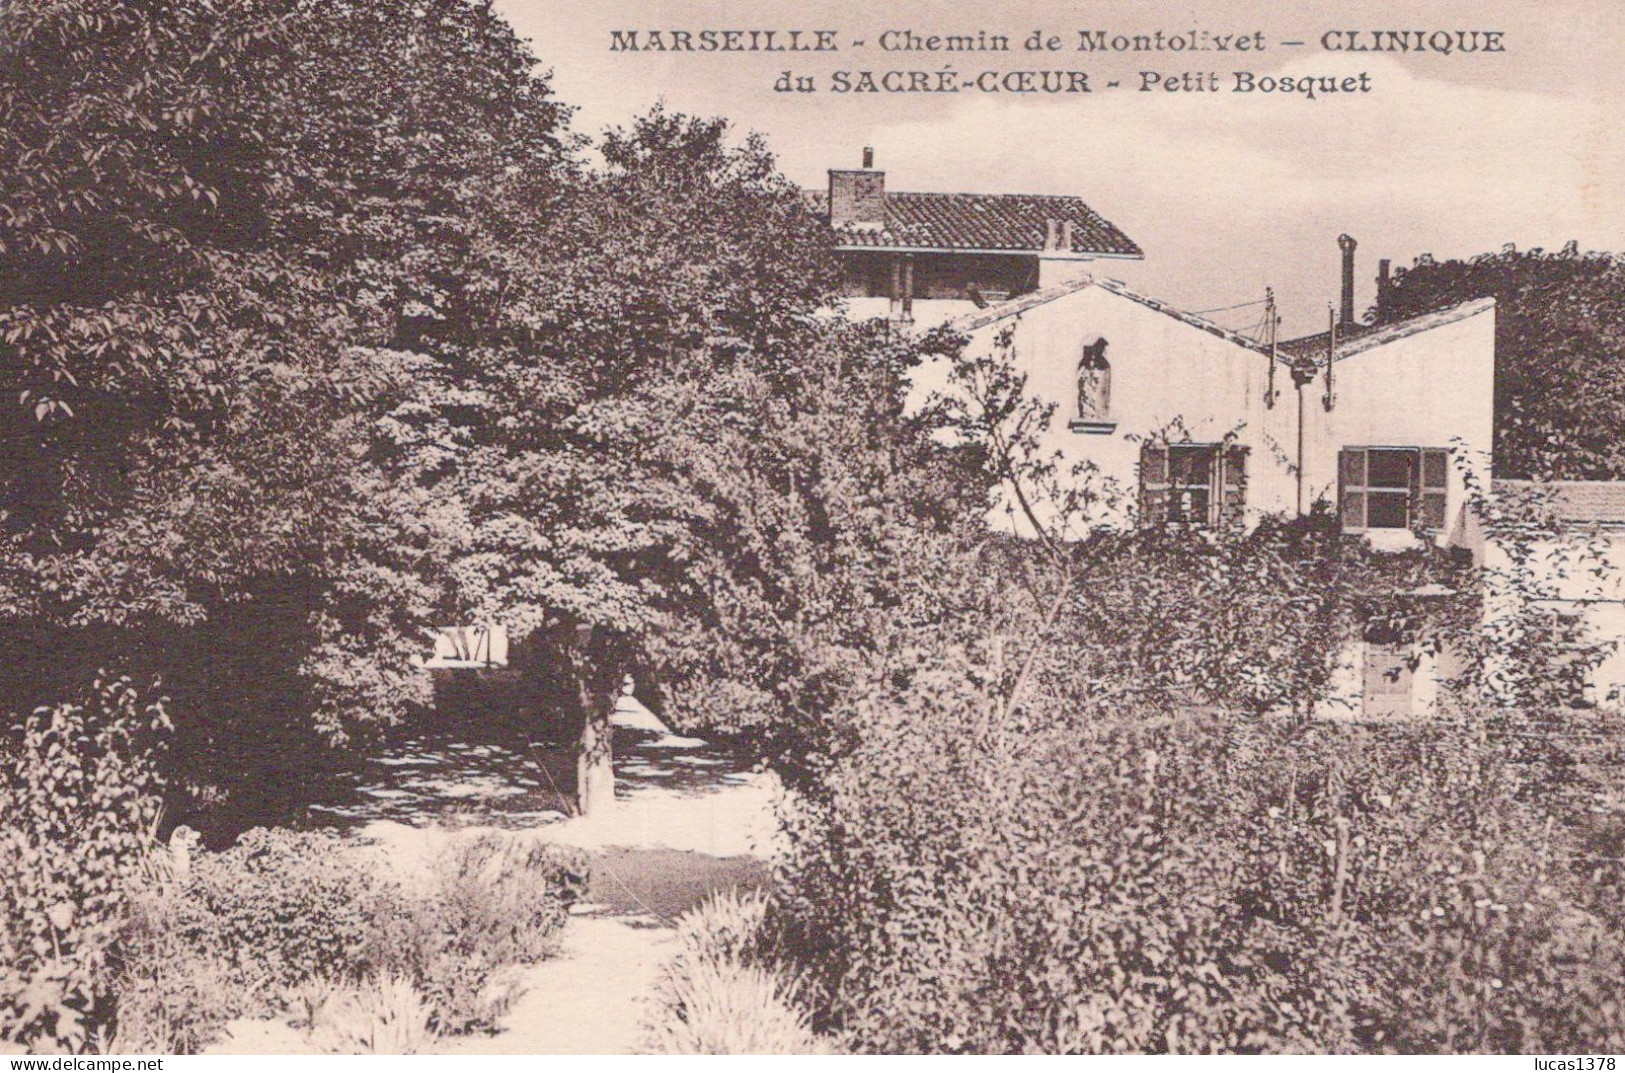 13 / MARSEILLE / MONTOLIVET / CHEMIN DE MONTOLIVET / CLINIQUE DU SACRE COEUR / PETIT BOSQUET - Saint Barnabé, Saint Julien, Montolivet